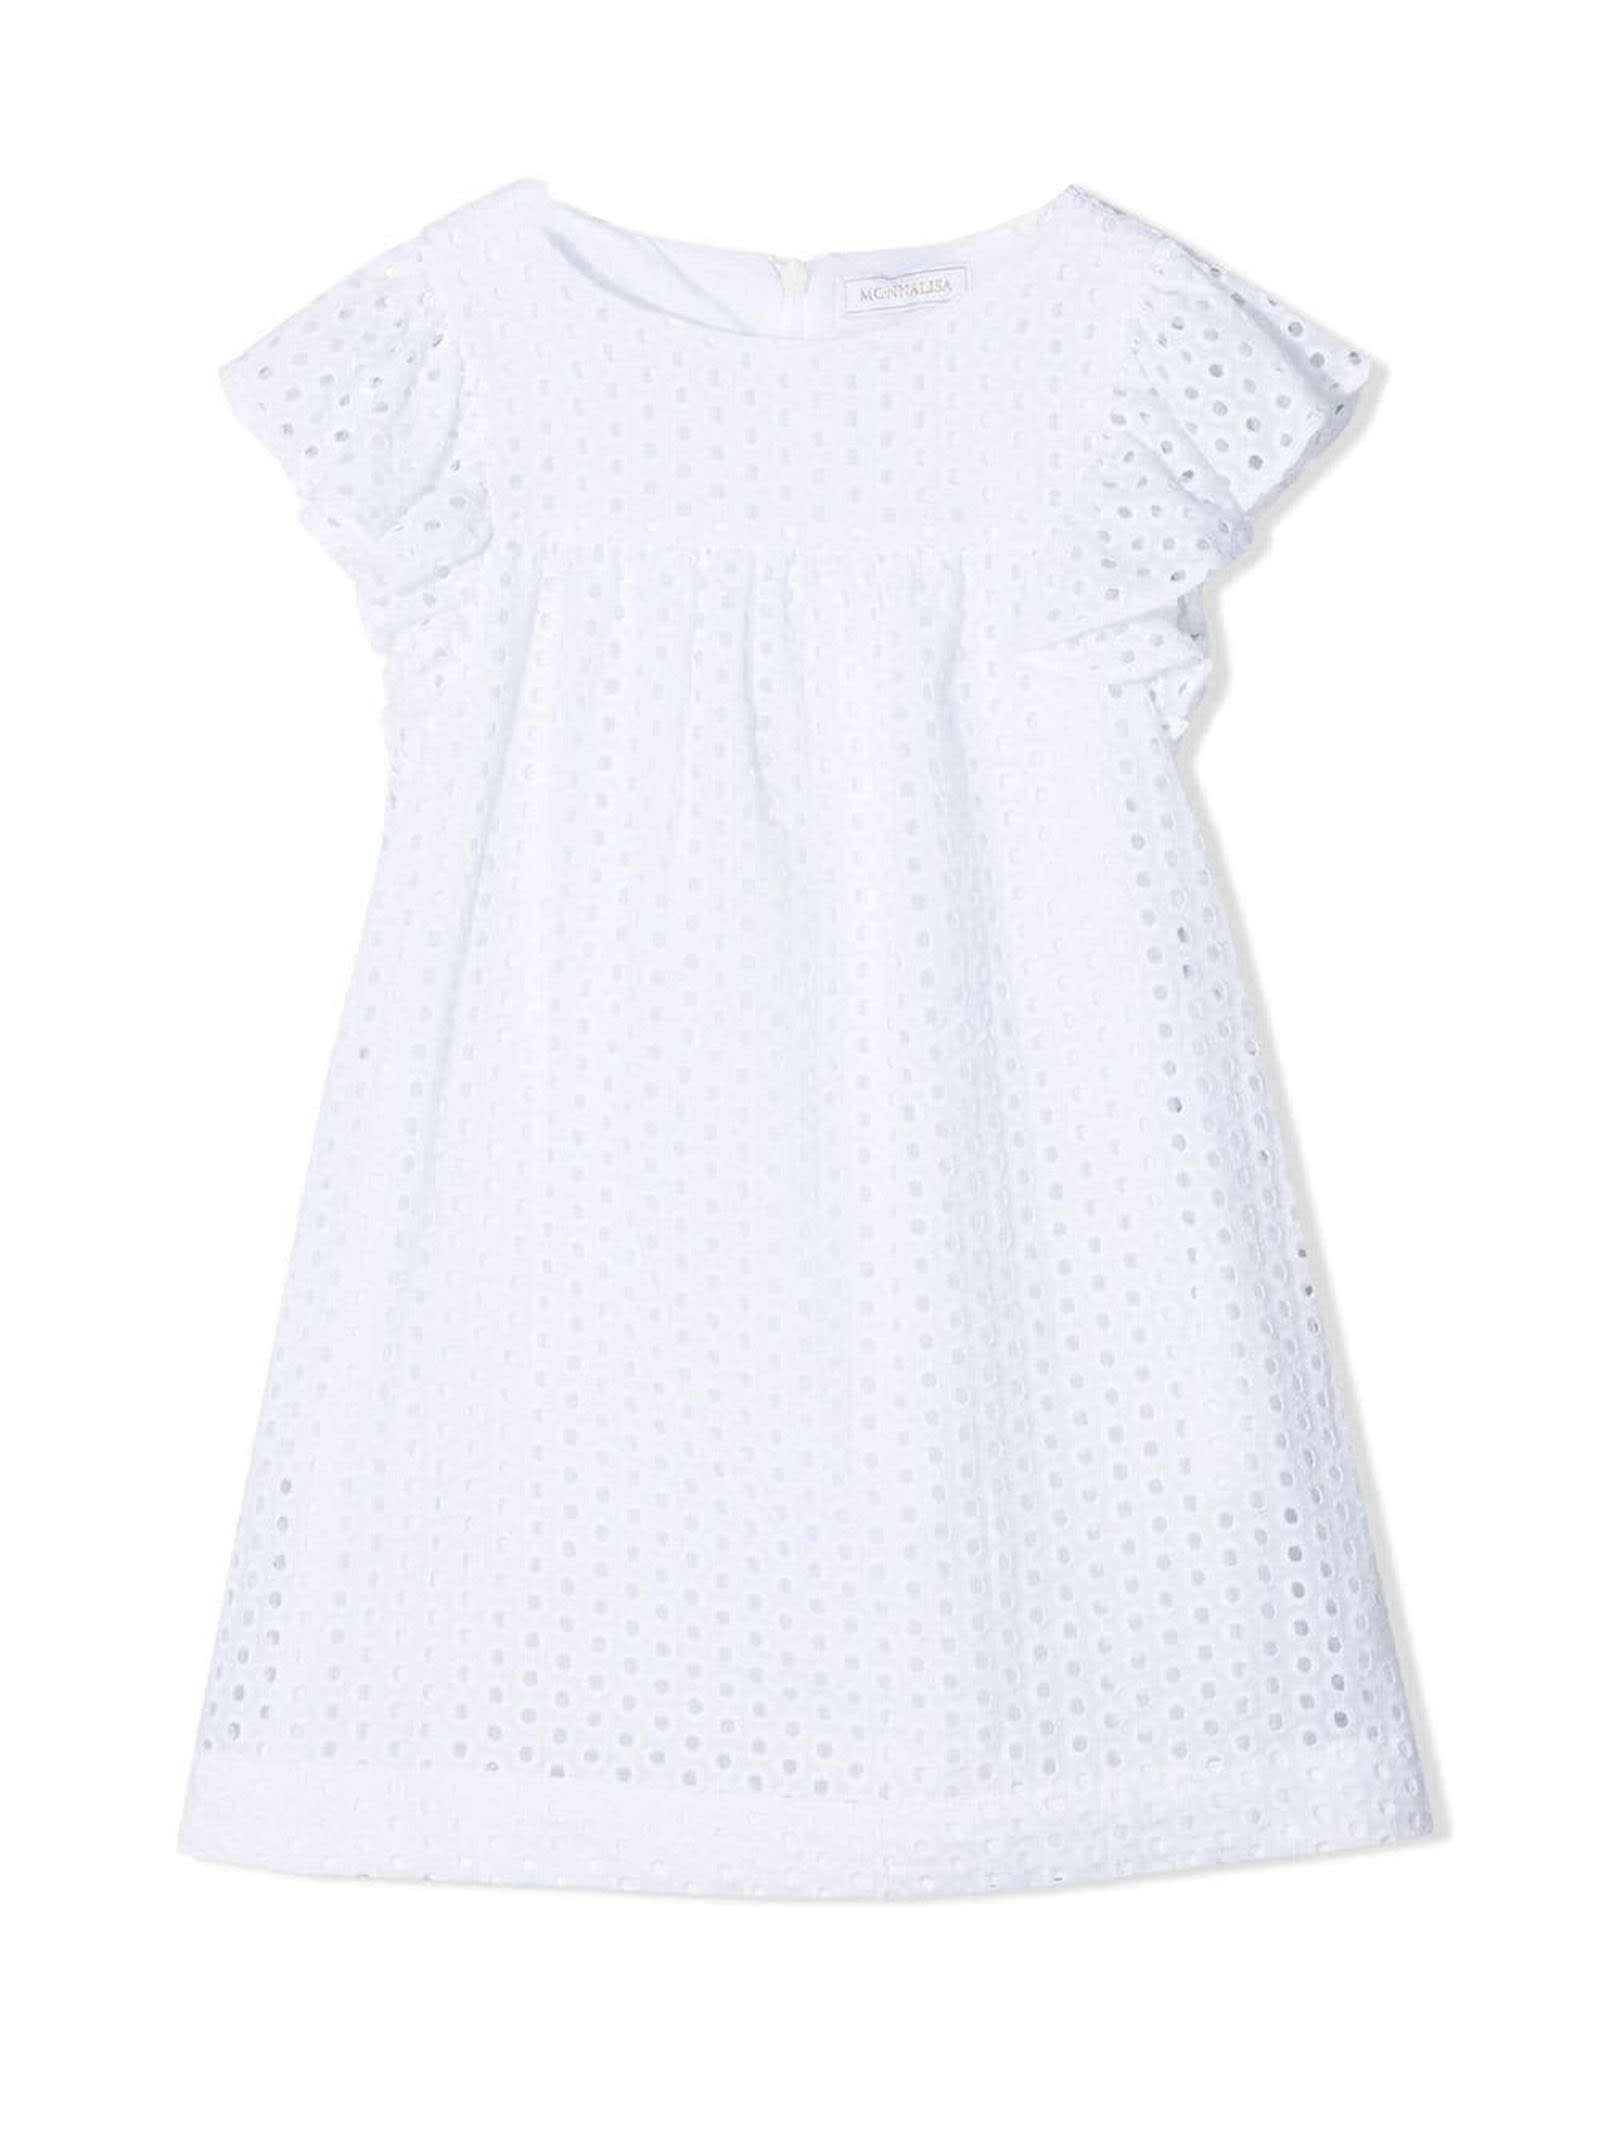 Monnalisa White Cotton Dress